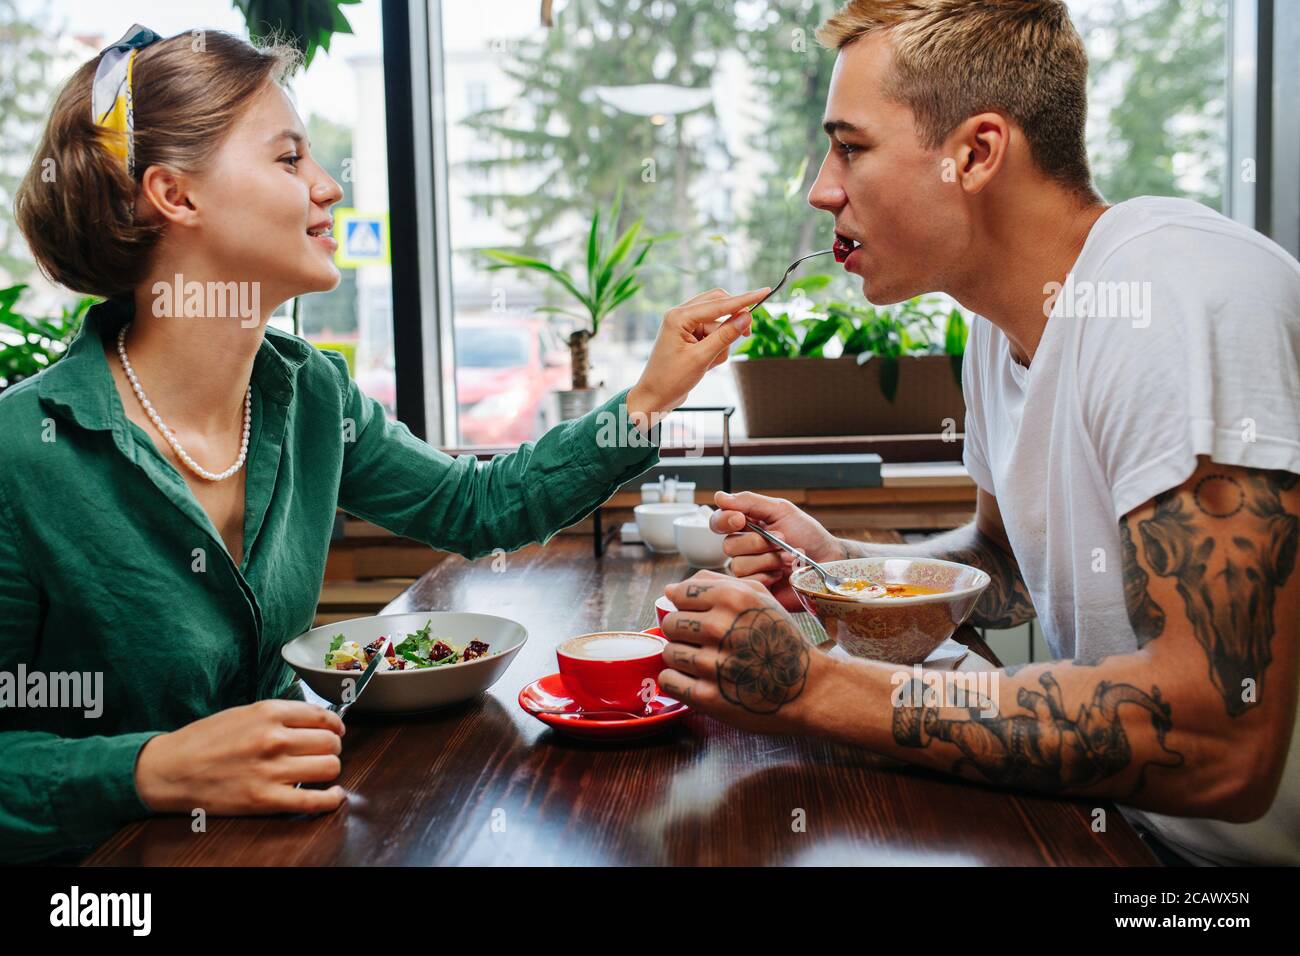 Uomo con donna in data in un caffè, gli sta dando un morso del suo pasto. Foto Stock